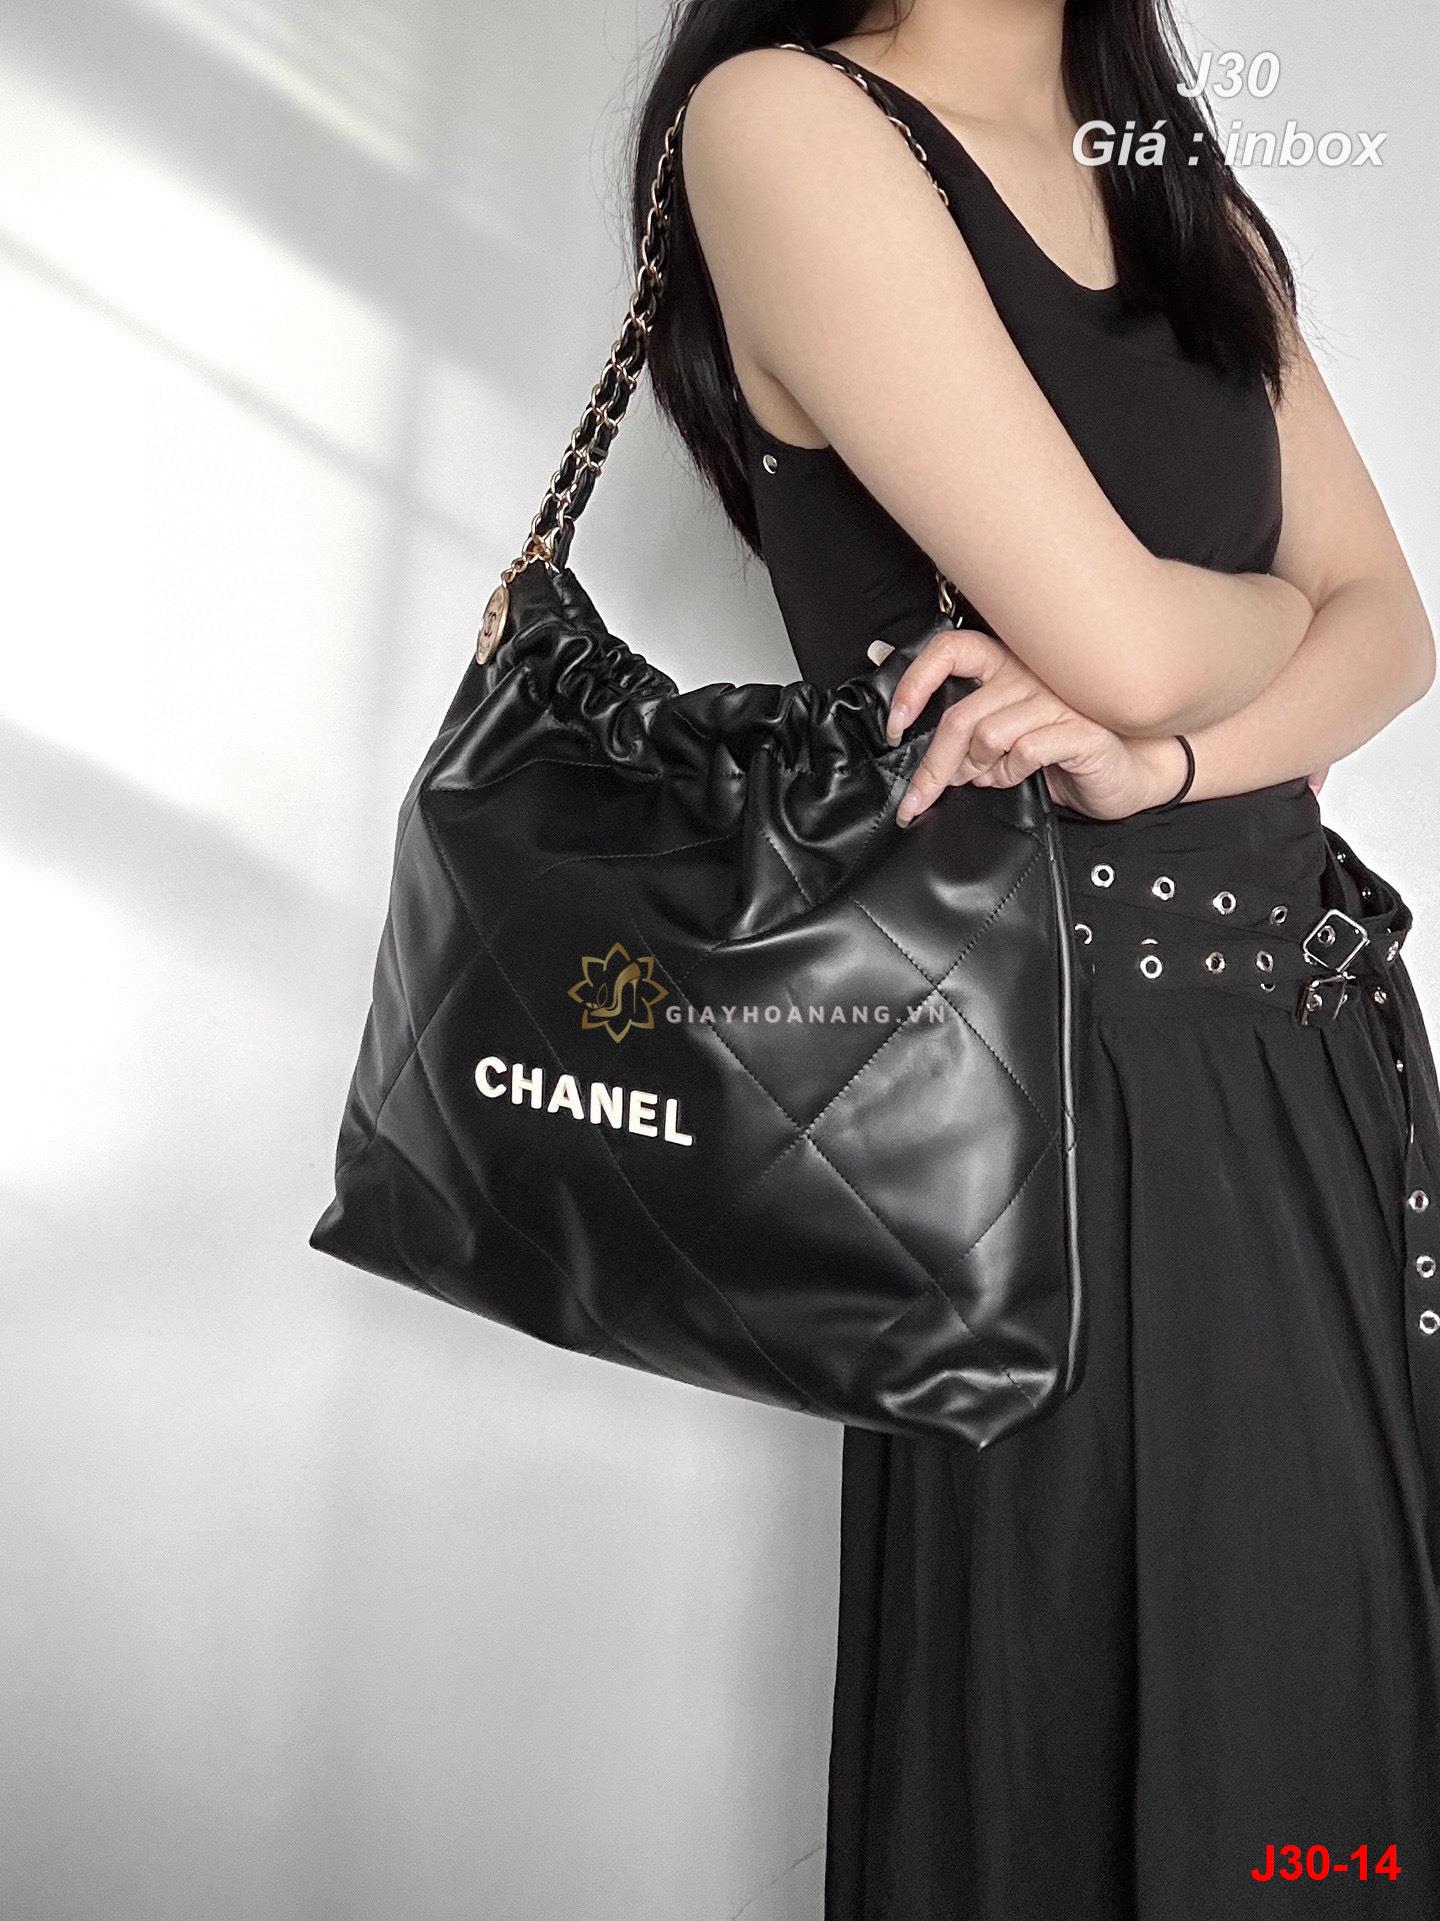 J30-14 Chanel túi siêu cấp